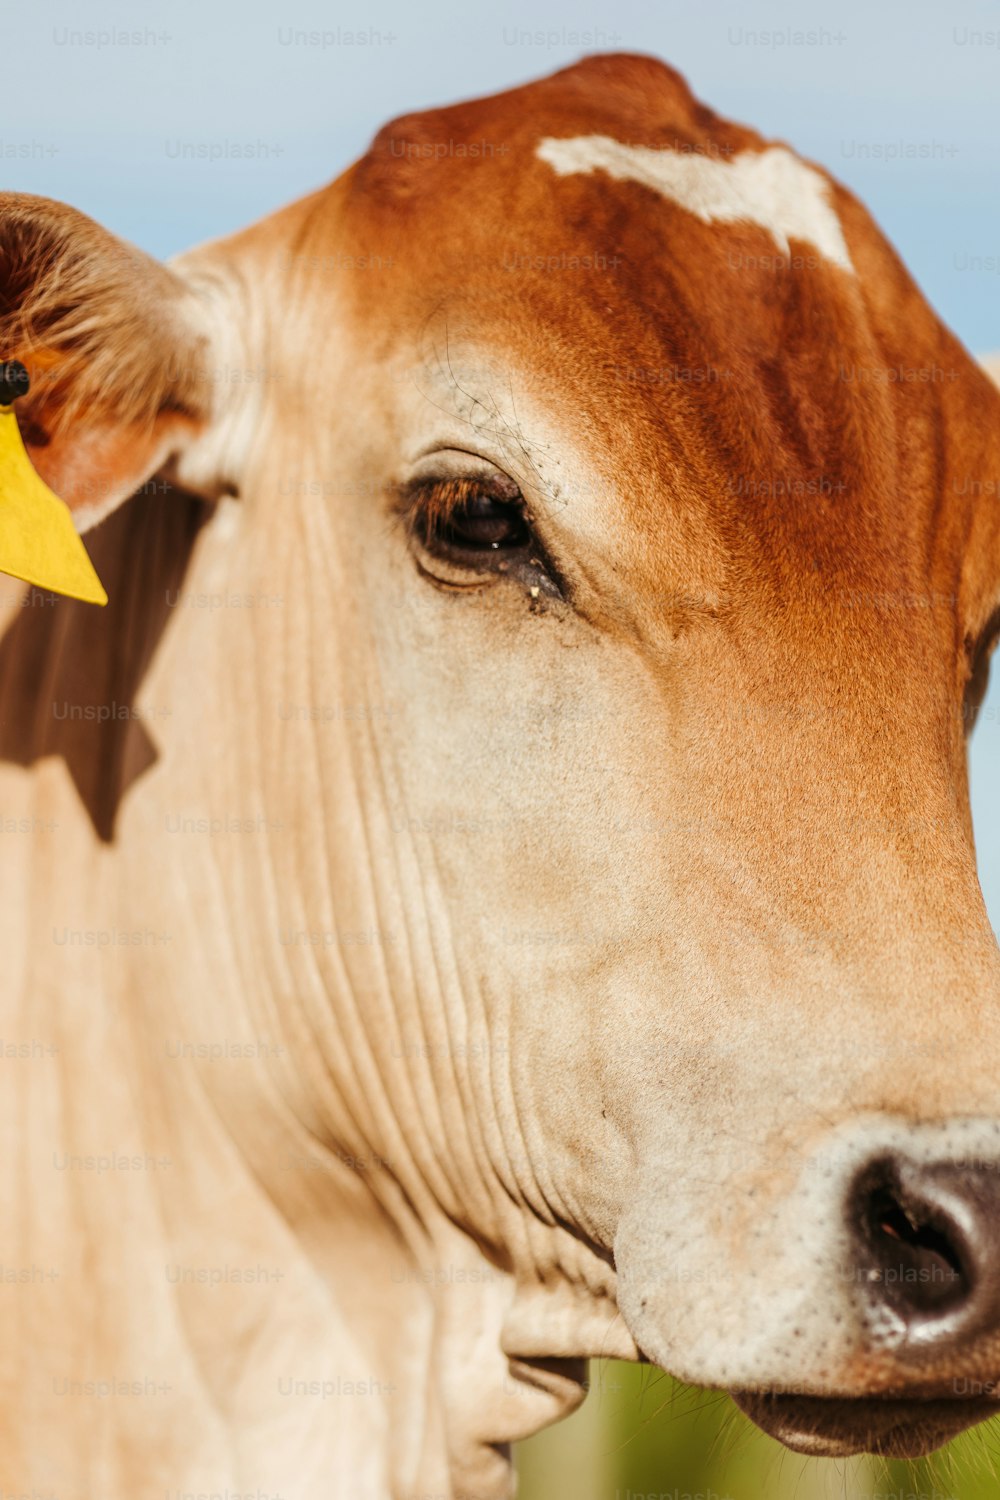 una vaca marrón y blanca con una etiqueta amarilla en la oreja